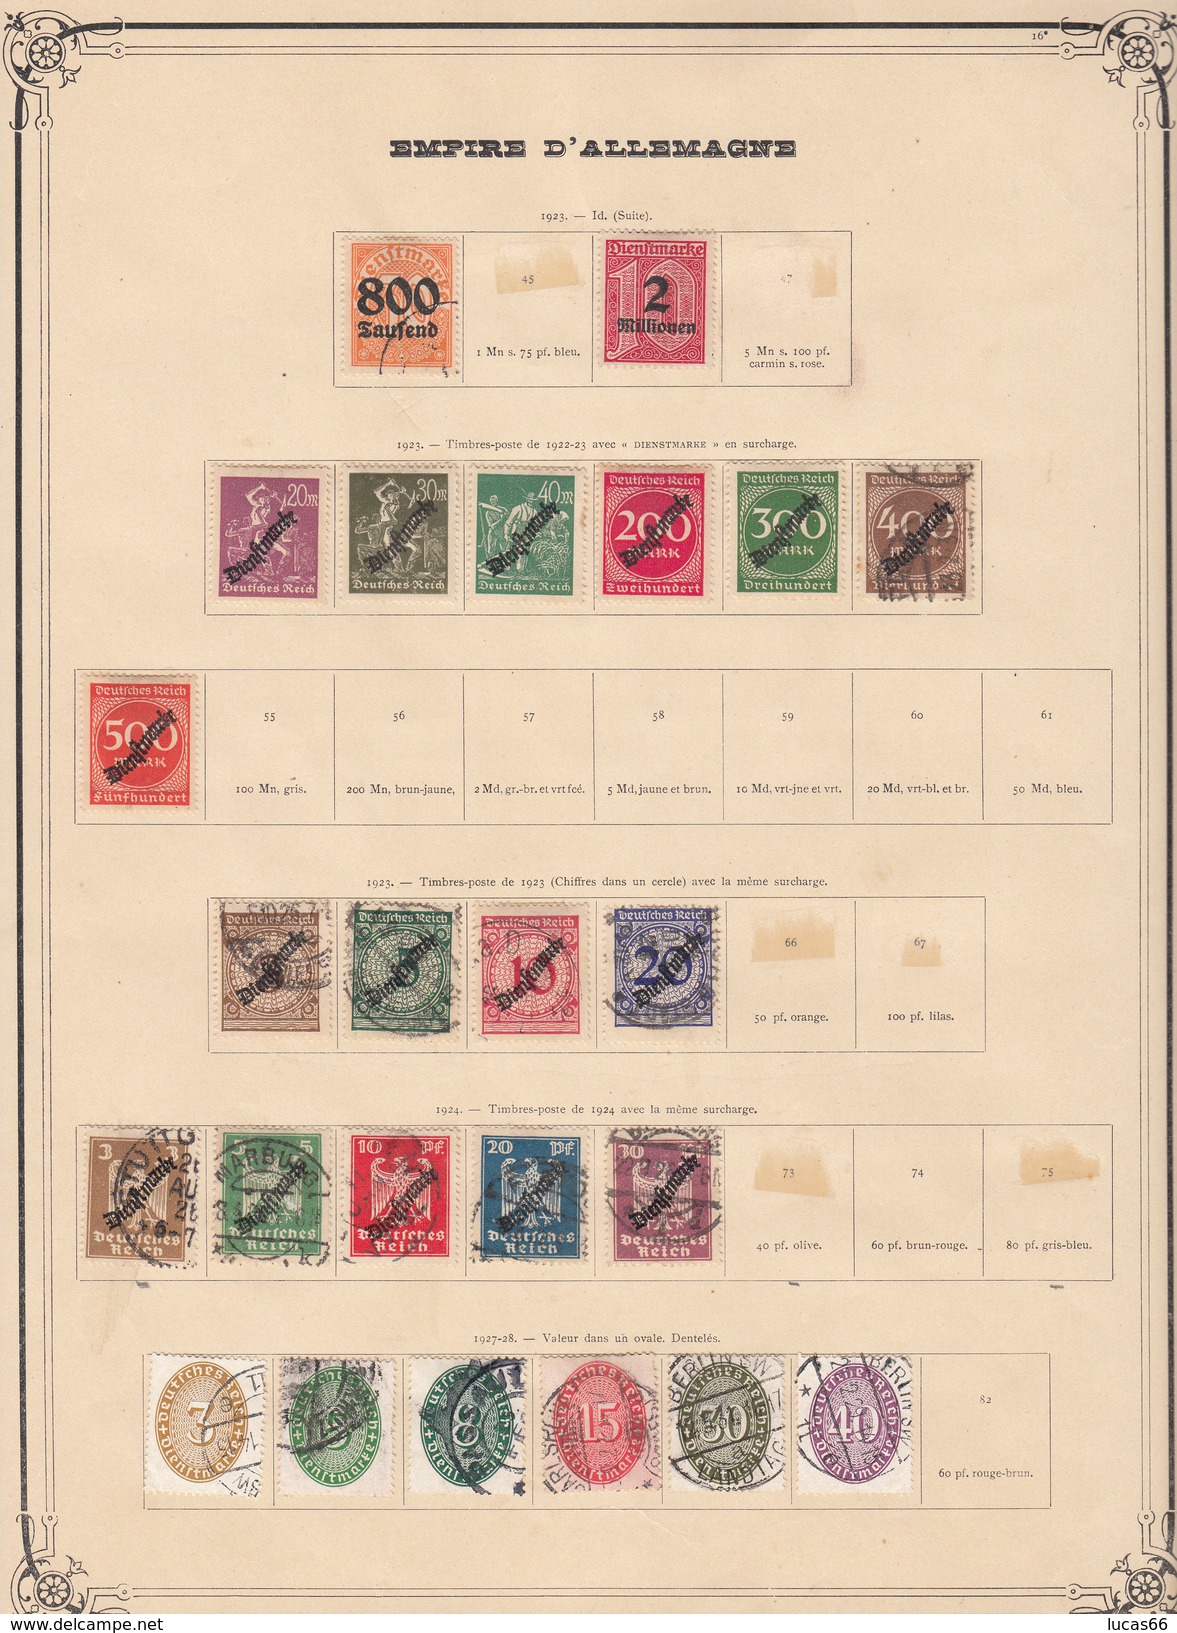 Antica Collezione Germania e Reich 1870-1950 in maggioranza usati in buone condizioni generali